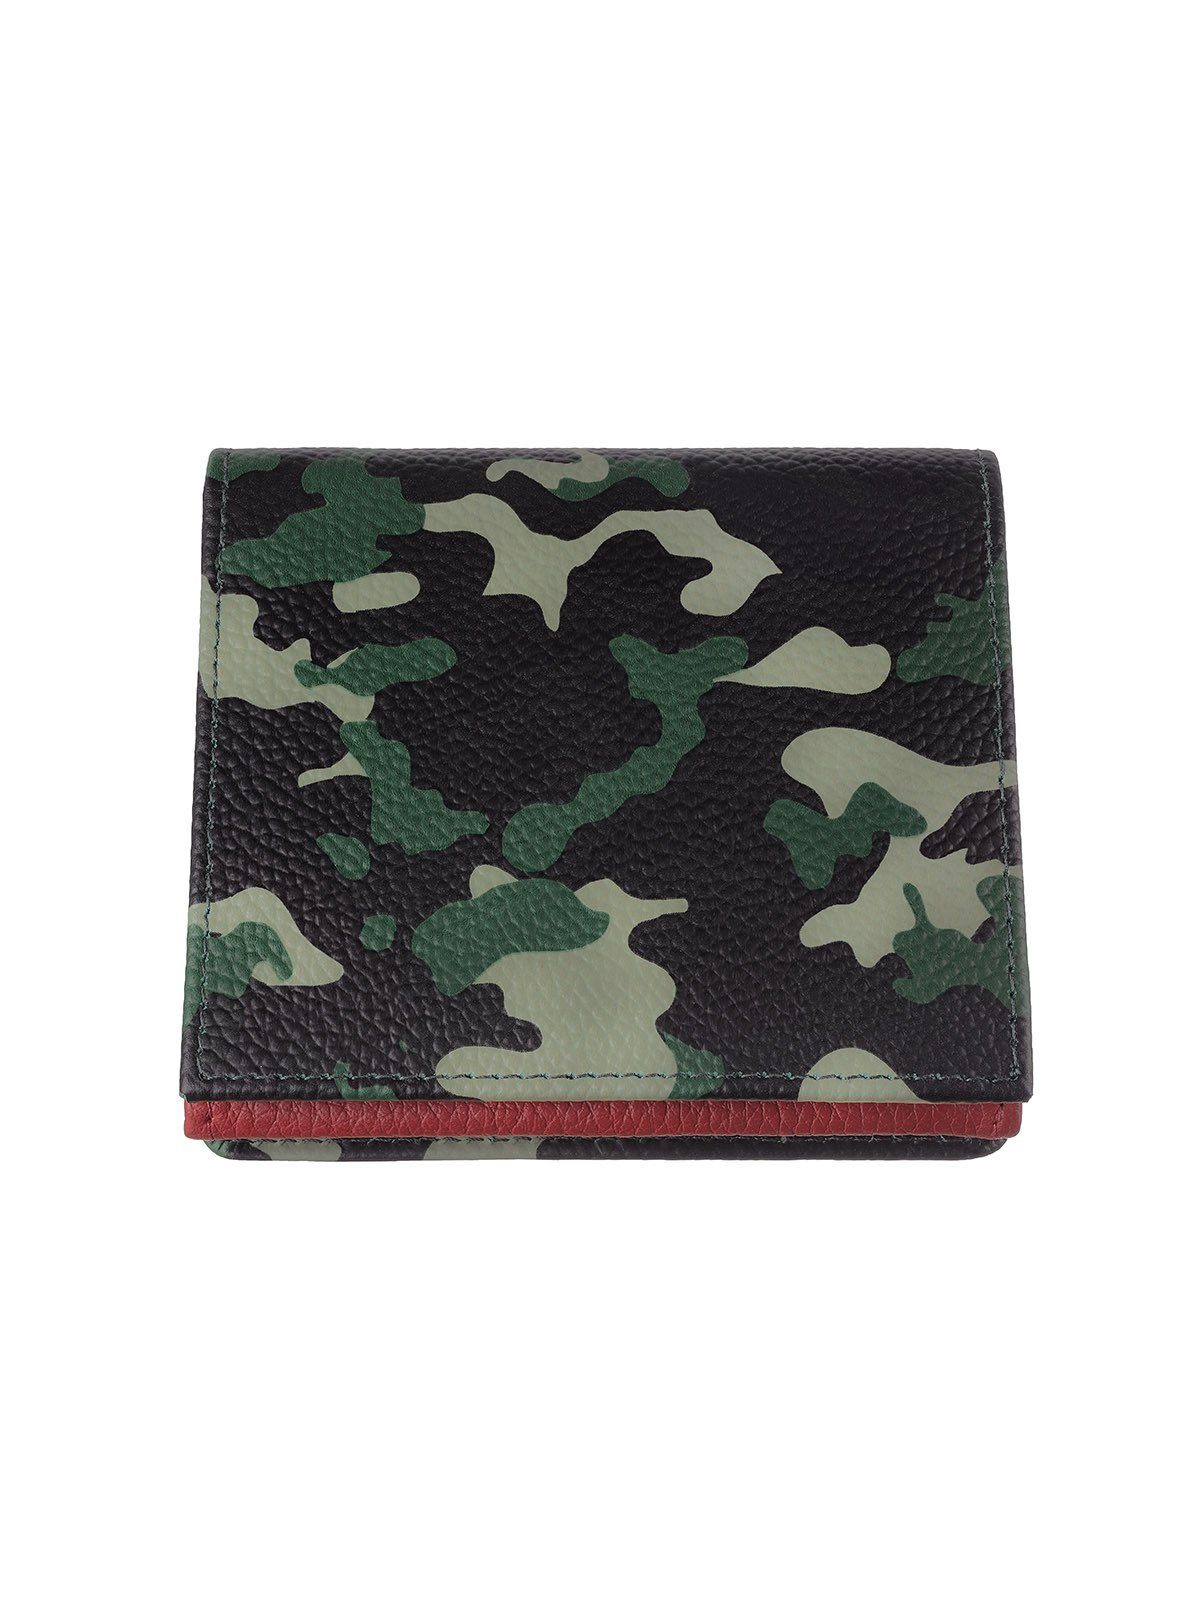 Geldbörse Zippo Kreditkartenfächer Geldbörse camouflage,